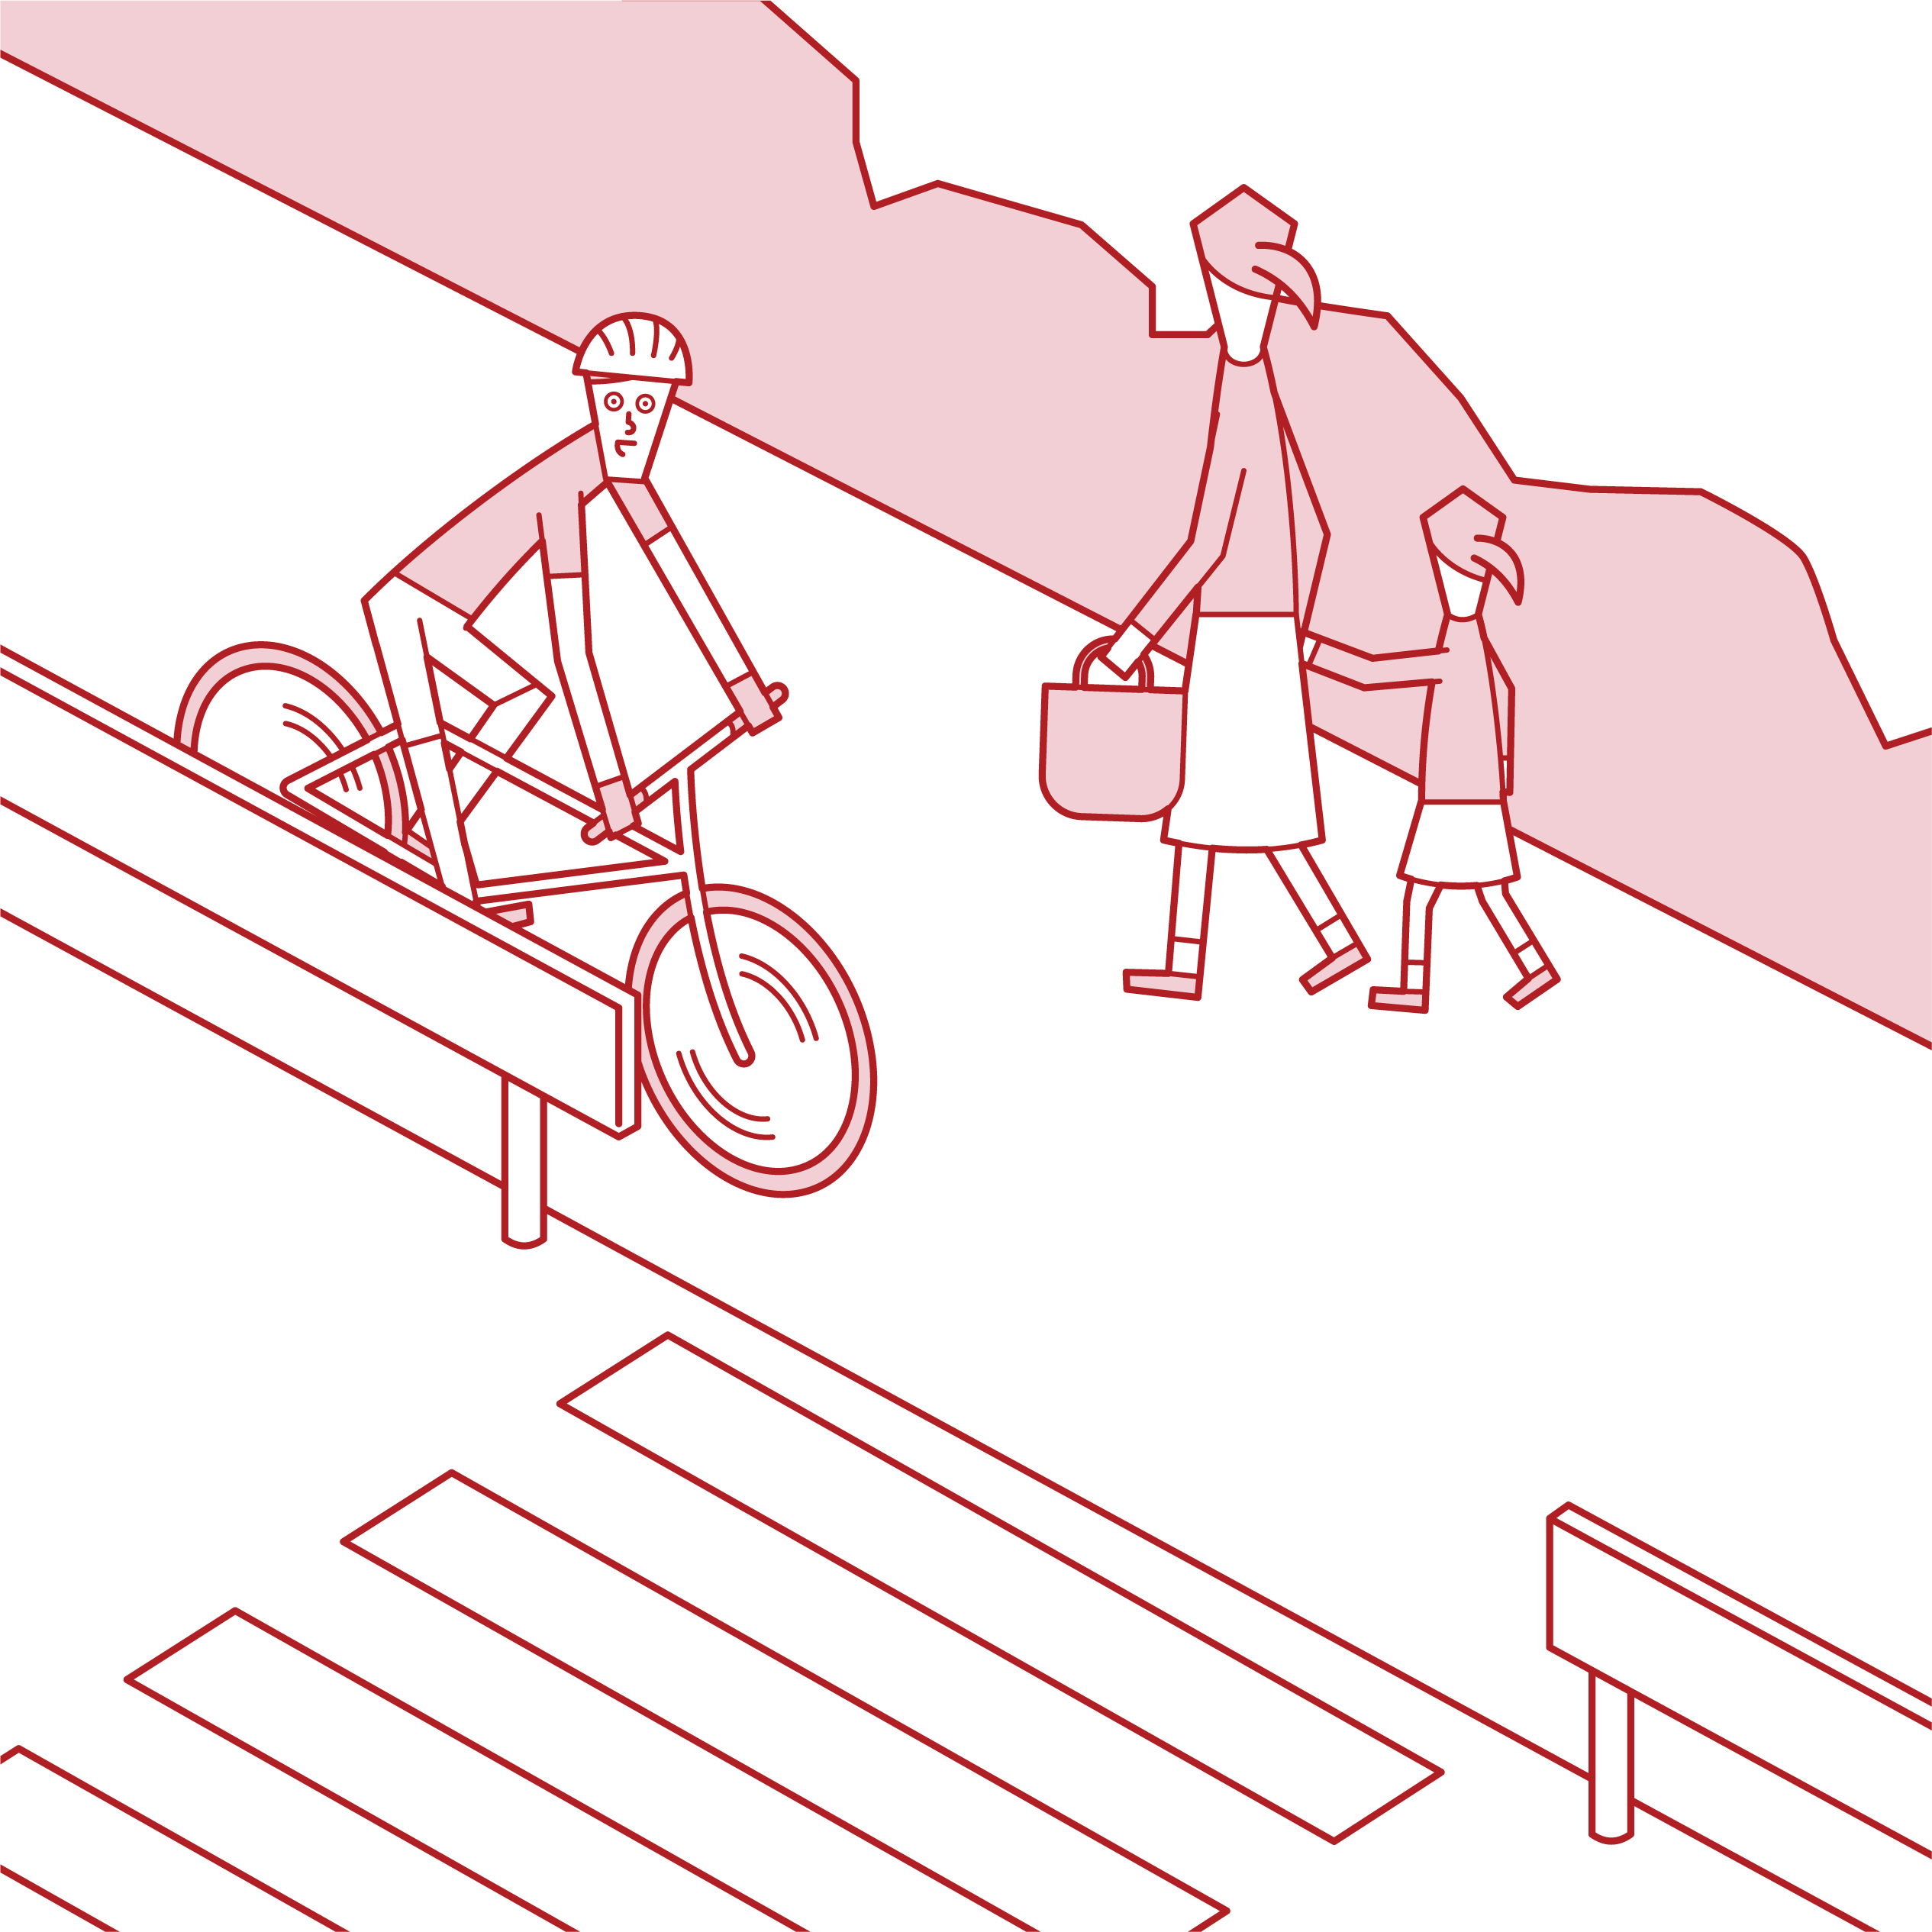 騎自行車的人（男性）在人行道上優先考慮行人